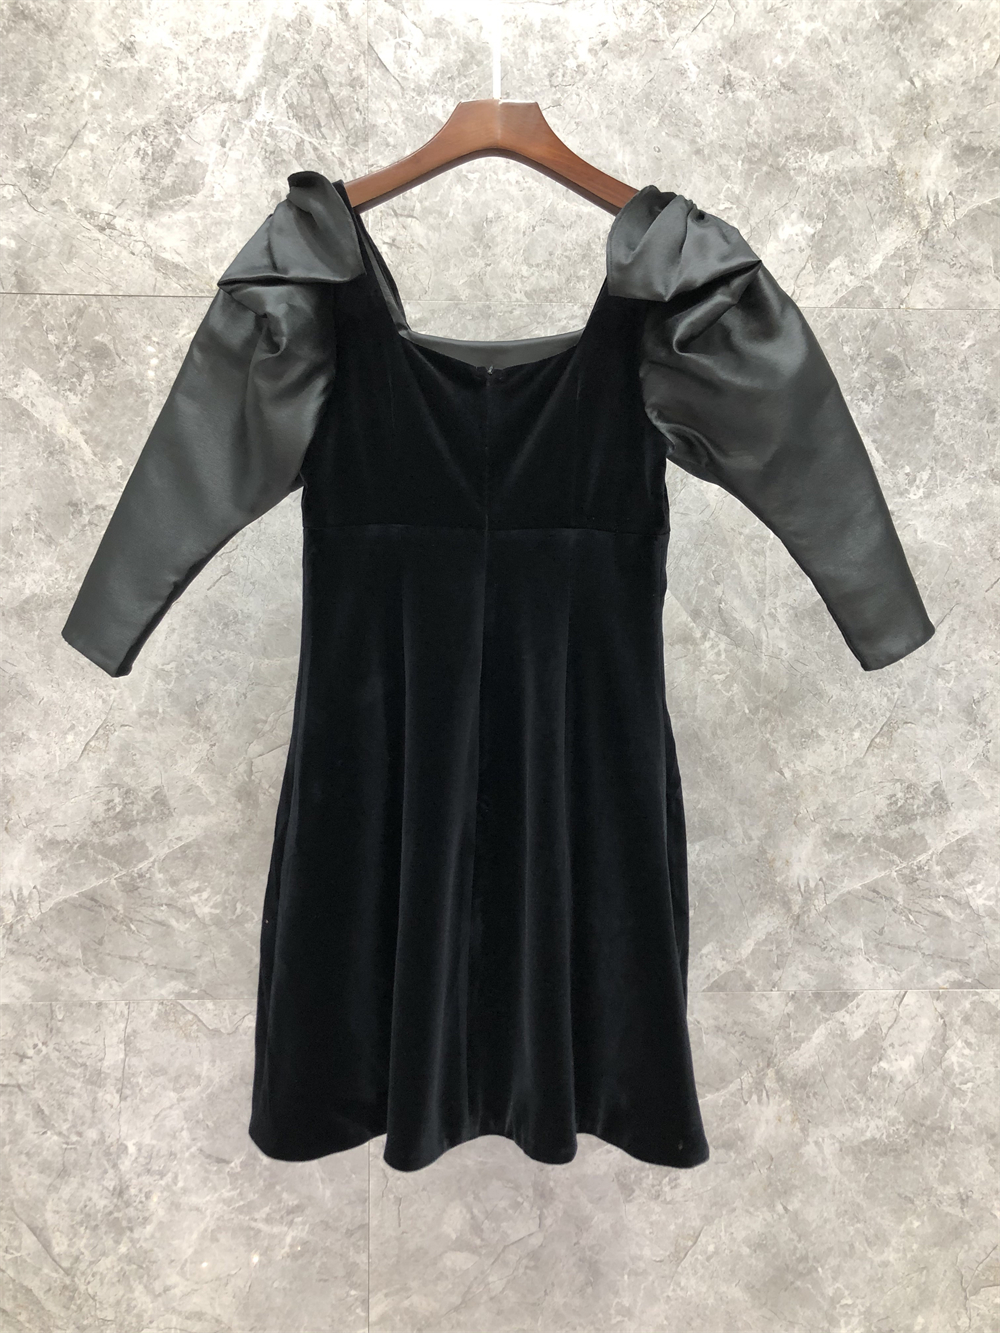 

Xiaozi Western Square Collar Three-Quarter Sleeve French Velvet Dress Womens Autumn European Goods New Celebrity Short Skirt 9R, Black